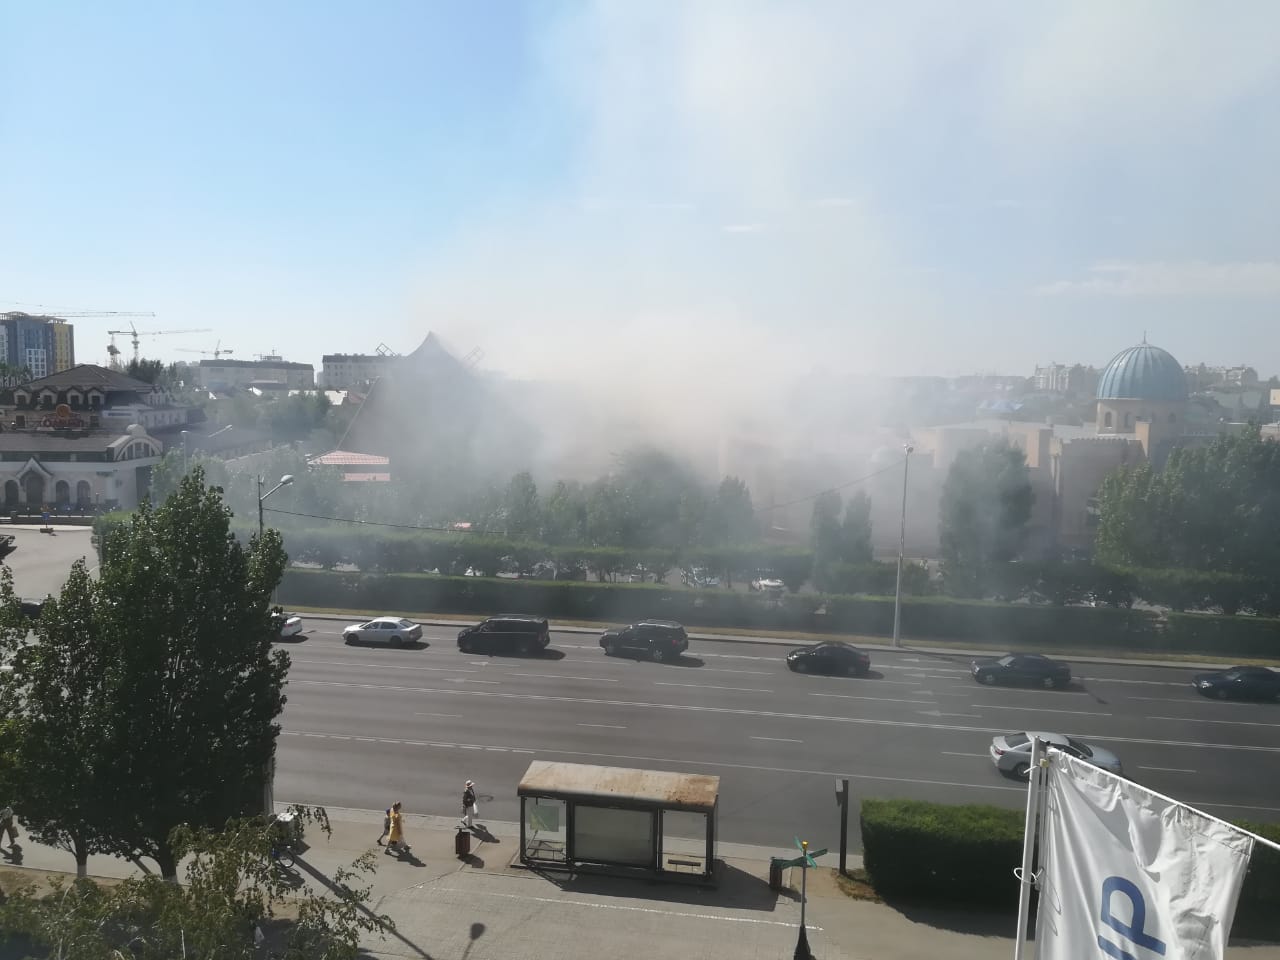 Ресторан "Мельница" горит в Нур-Султане